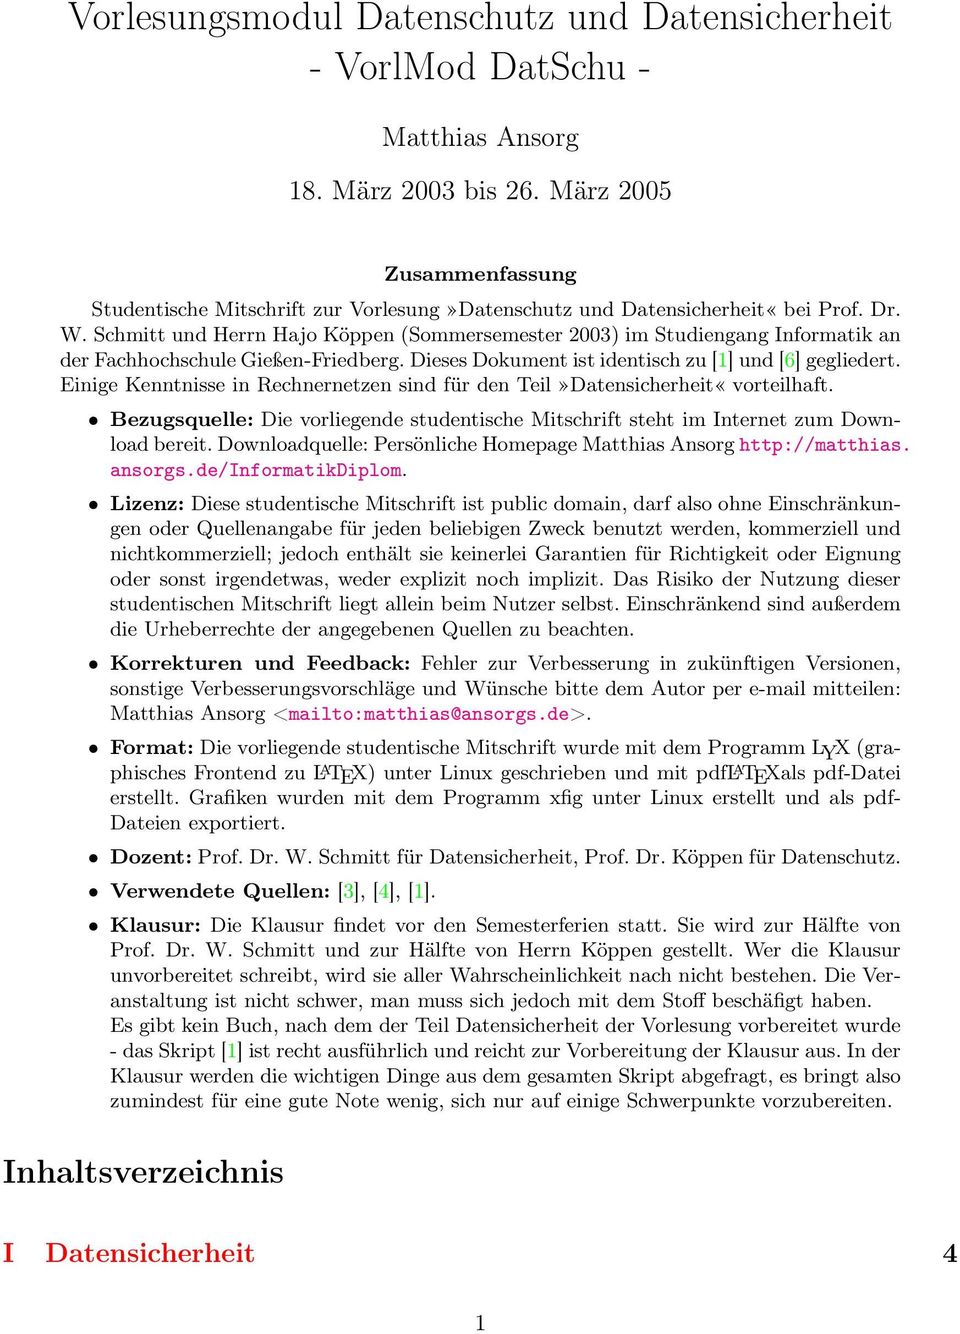 Schmitt und Herrn Hajo Köppen (Sommersemester 2003) im Studiengang Informatik an der Fachhochschule Gießen-Friedberg. Dieses Dokument ist identisch zu [1] und [6] gegliedert.